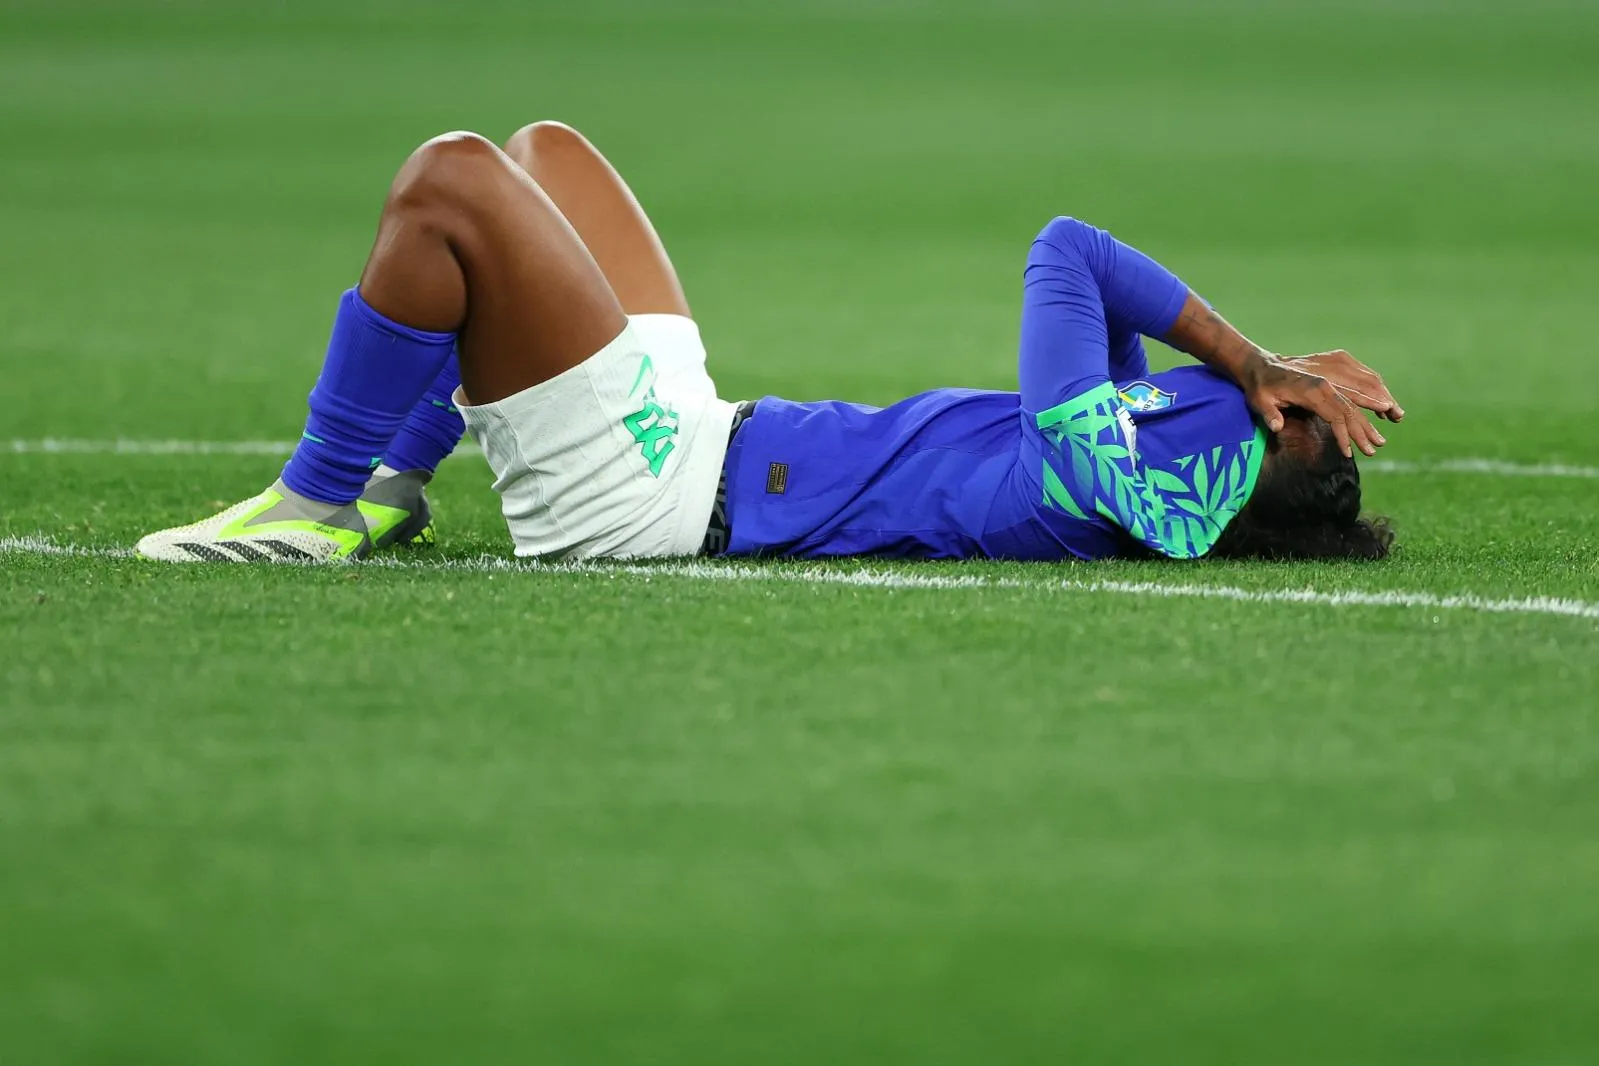 Brasil decepciona e está fora do Mundial de Futebol Feminino - AcheiUSA